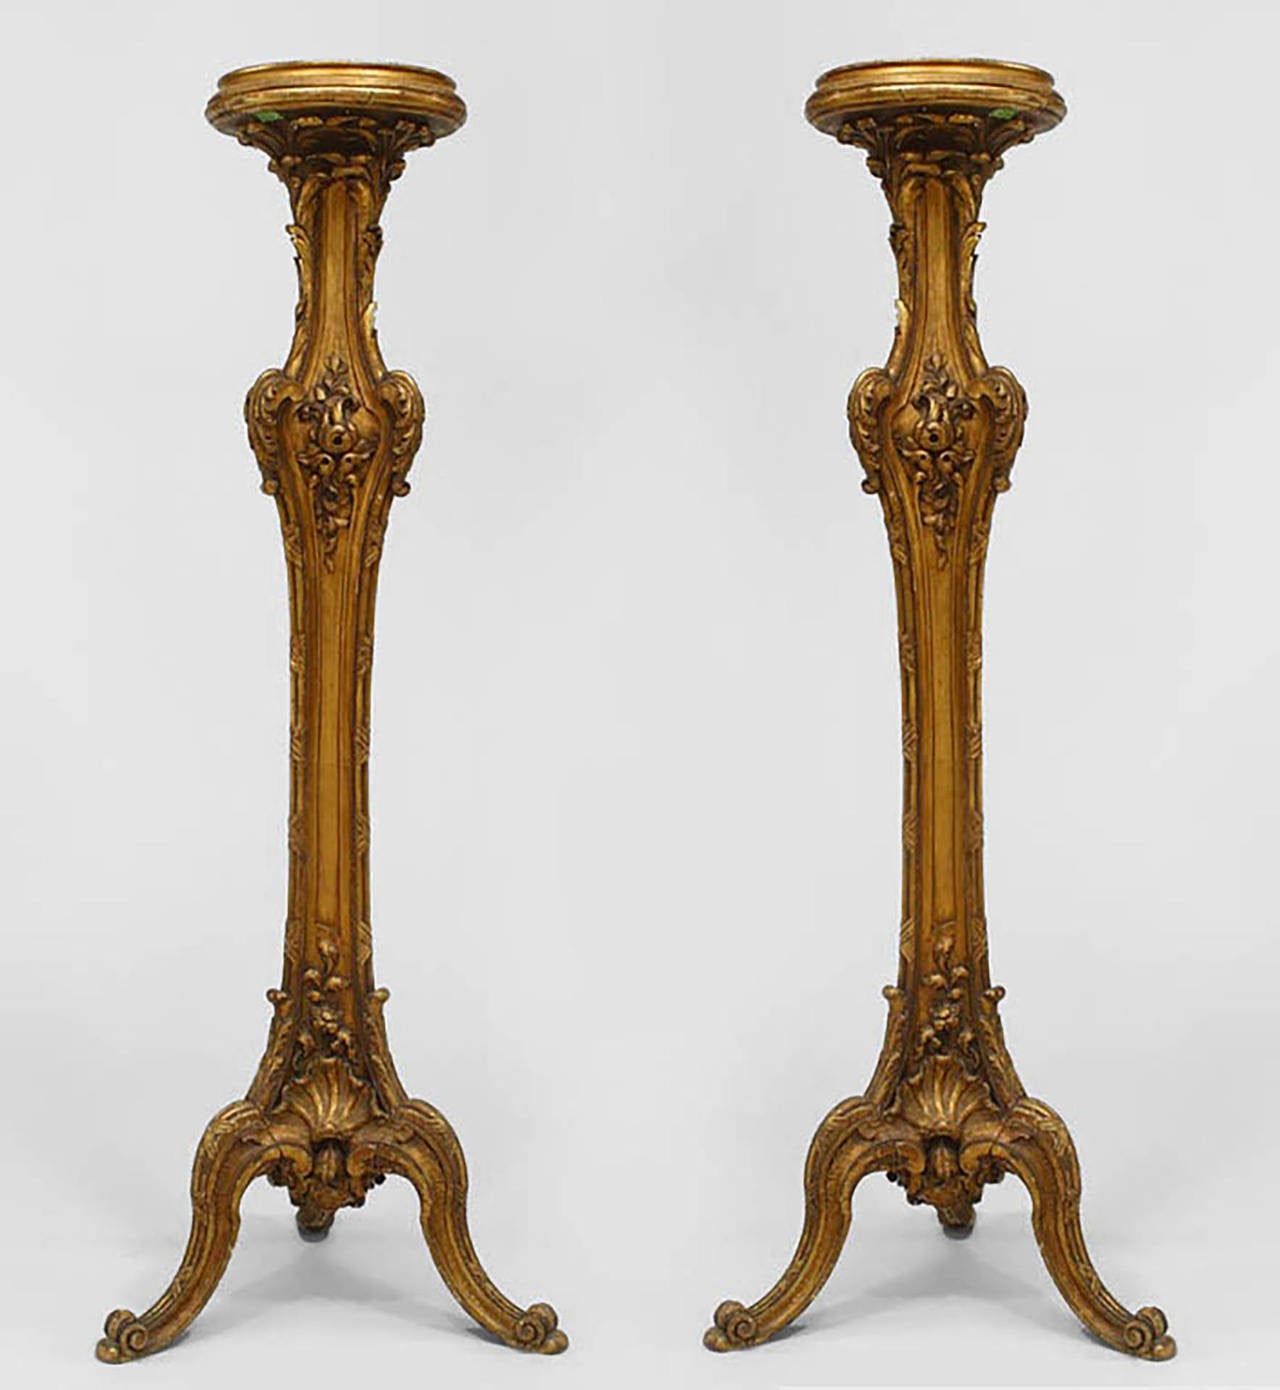 Paar vergoldete französische Sockel im Louis XV-Stil (19. Jh.) mit 3 Beinen an der Basis.
